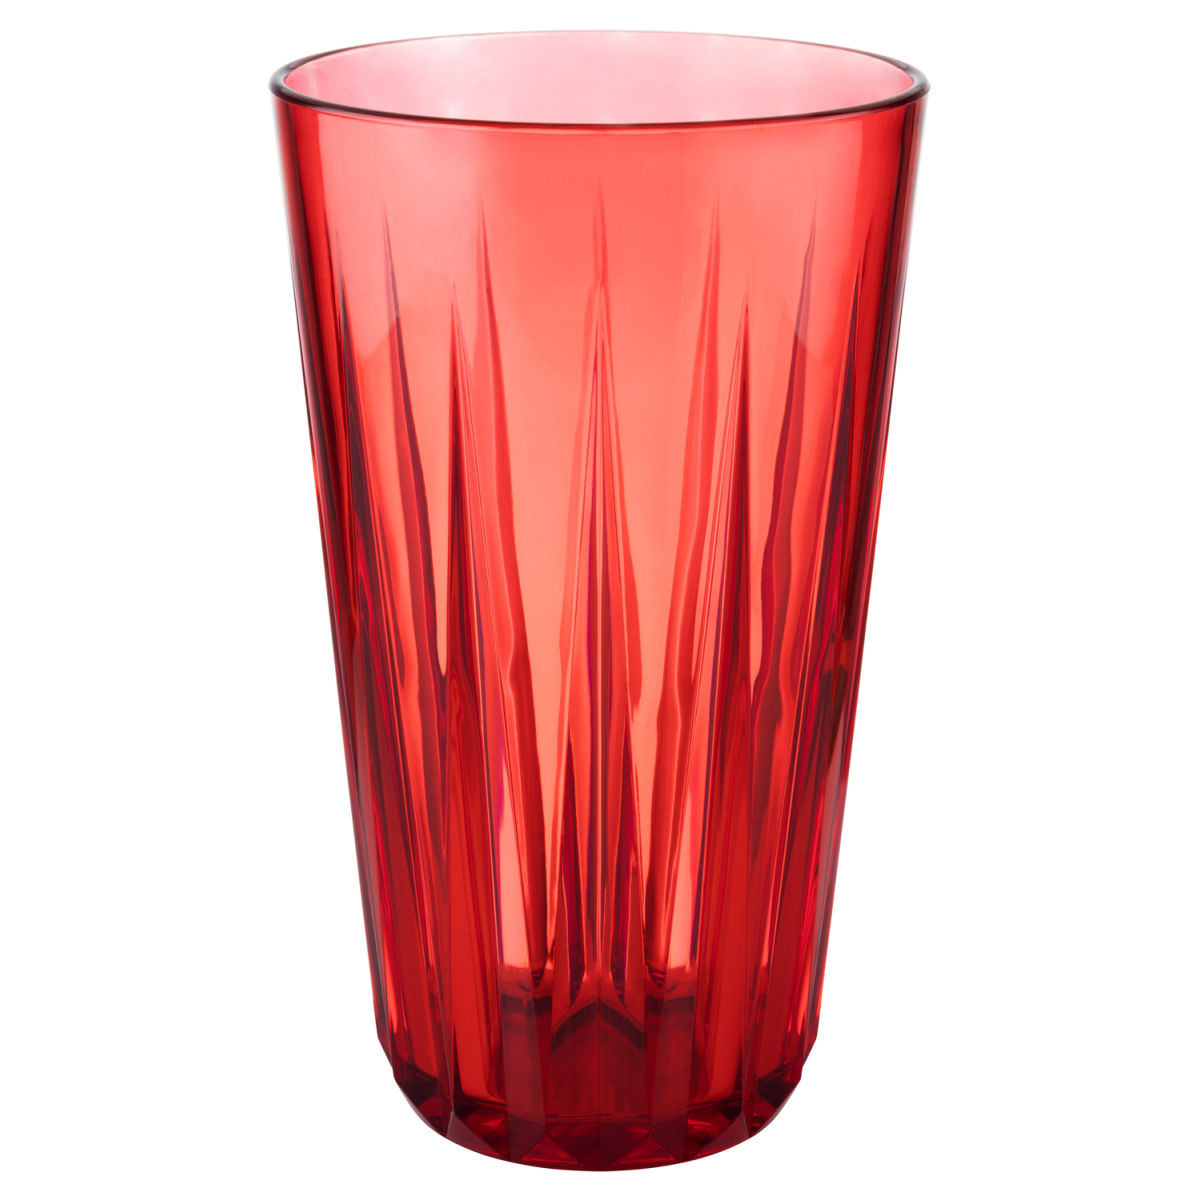 APS Waterglas Crystal; 500ml, 9x15.5 cm (ØxH); rood